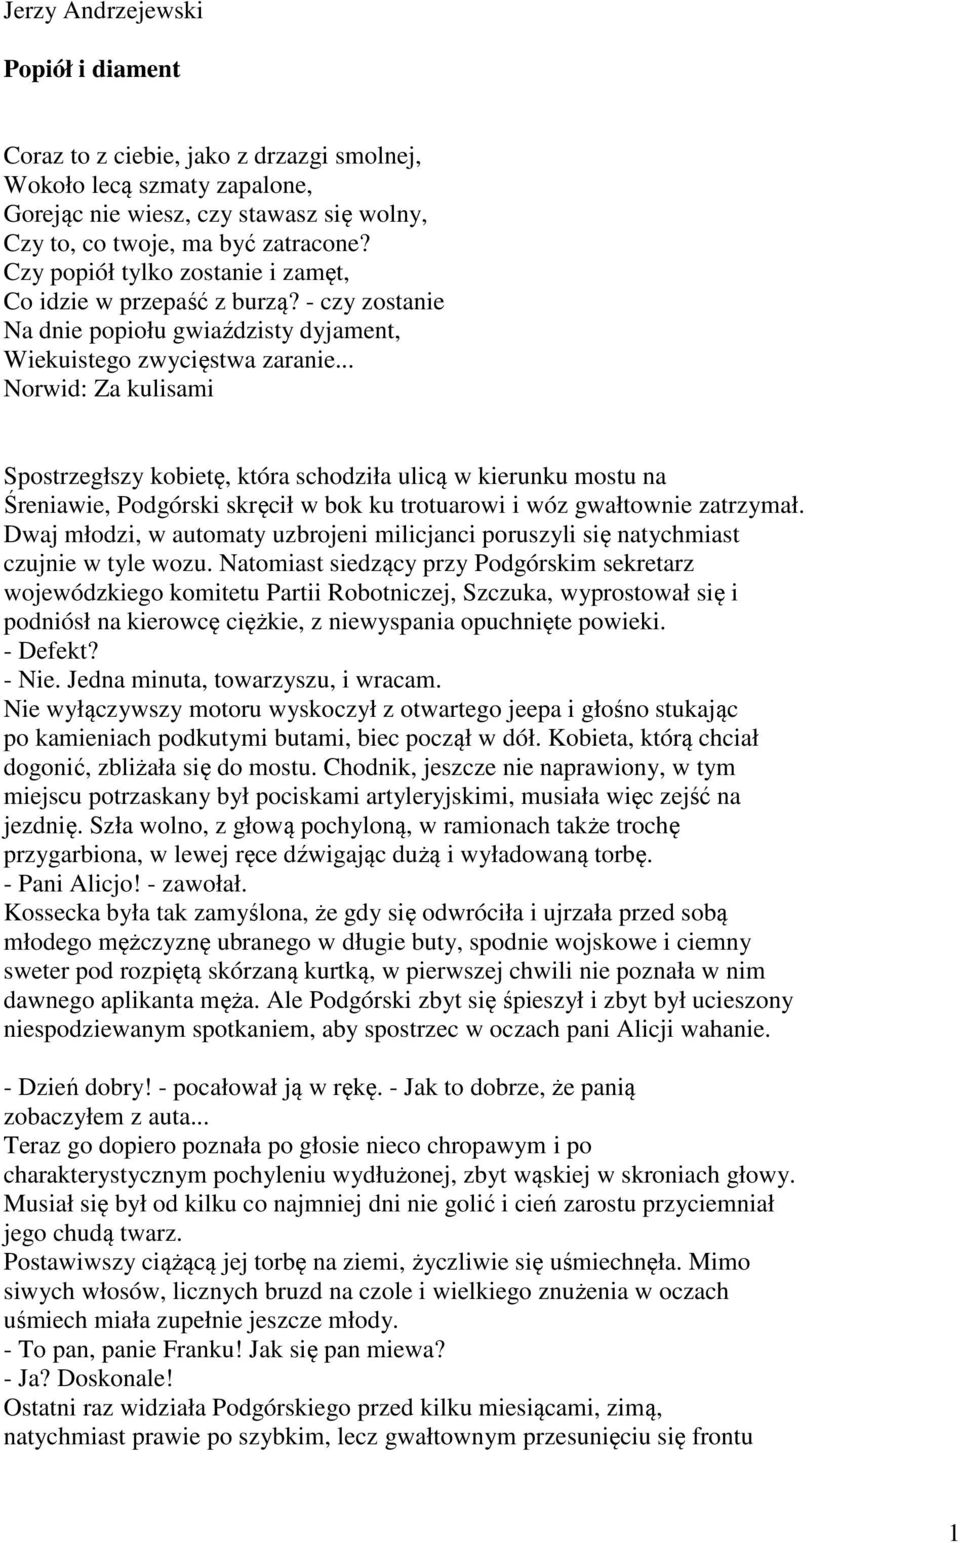 Jerzy Andrzejewski. Popiół i diament - PDF Free Download